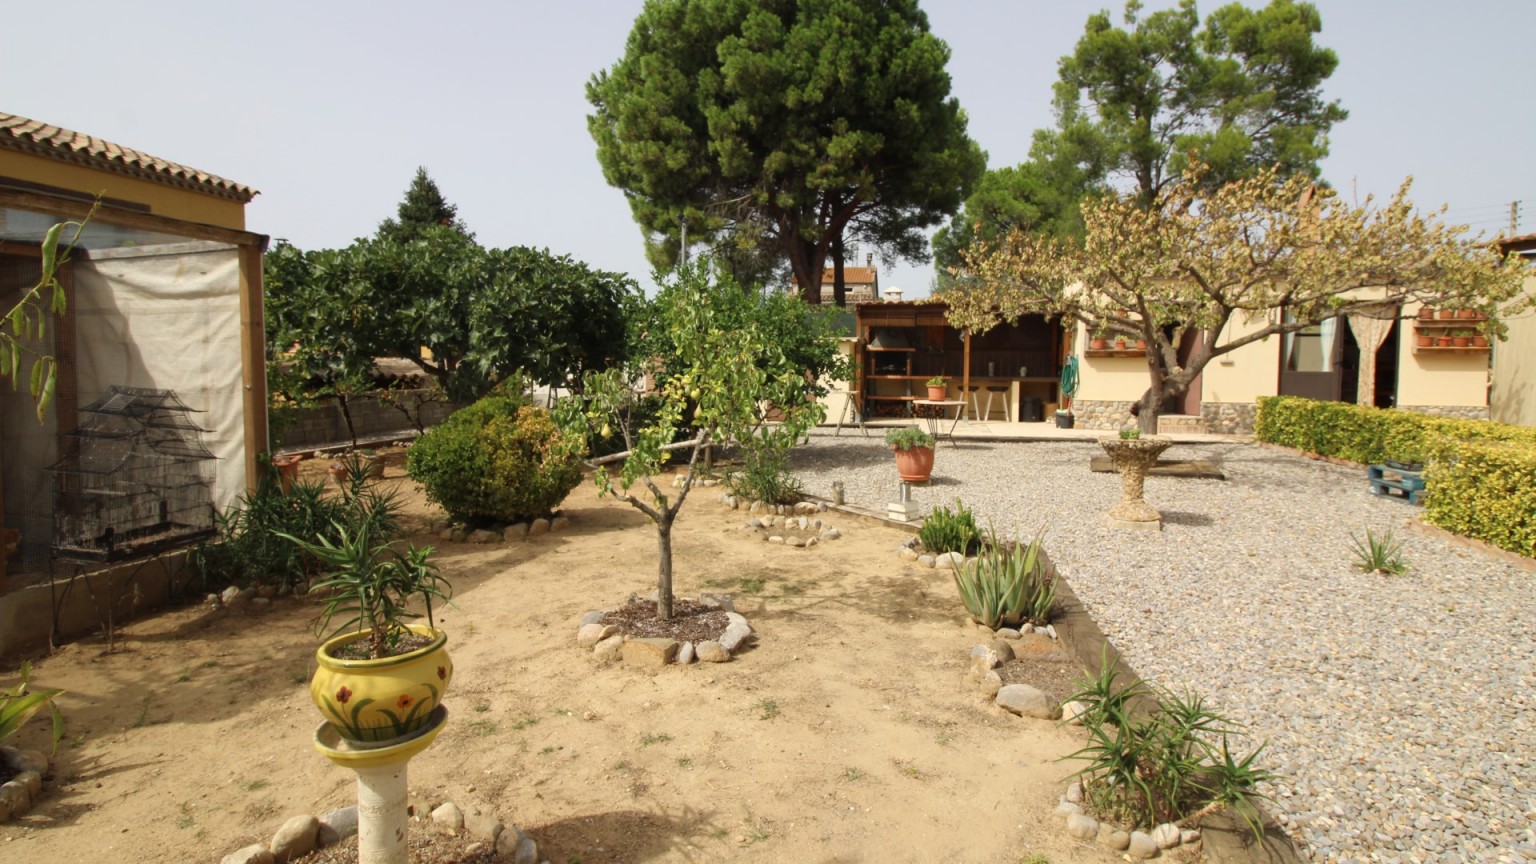 Encantador xalet en venda, de planta baixa amb gran jardí, a Sant Miquel de Fluvià.